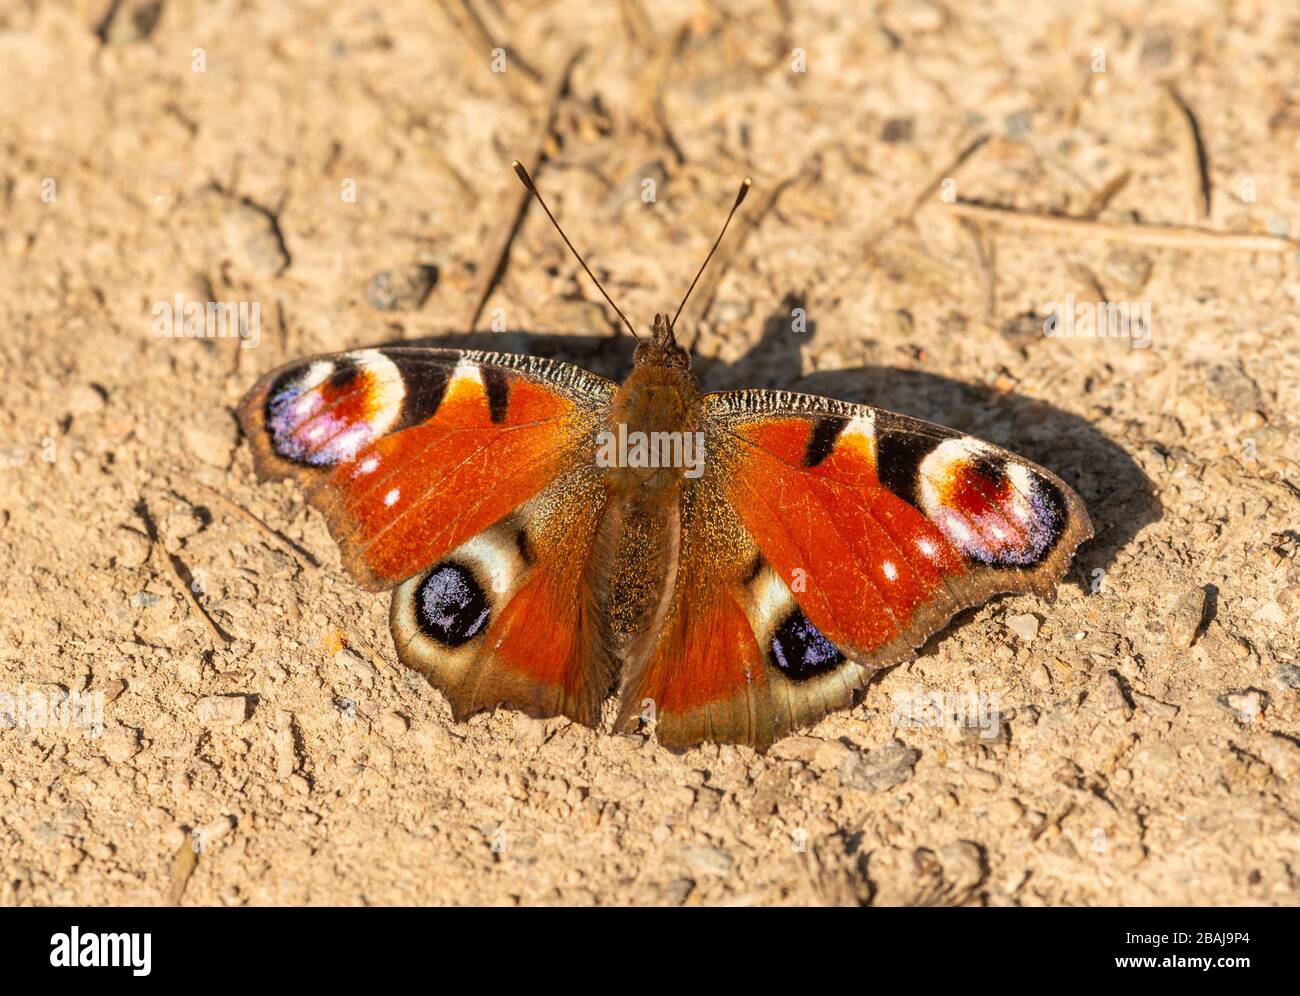 Farfalla di pavone (Aglais io) seduta aperta a terra, macro di insetti animali Foto Stock